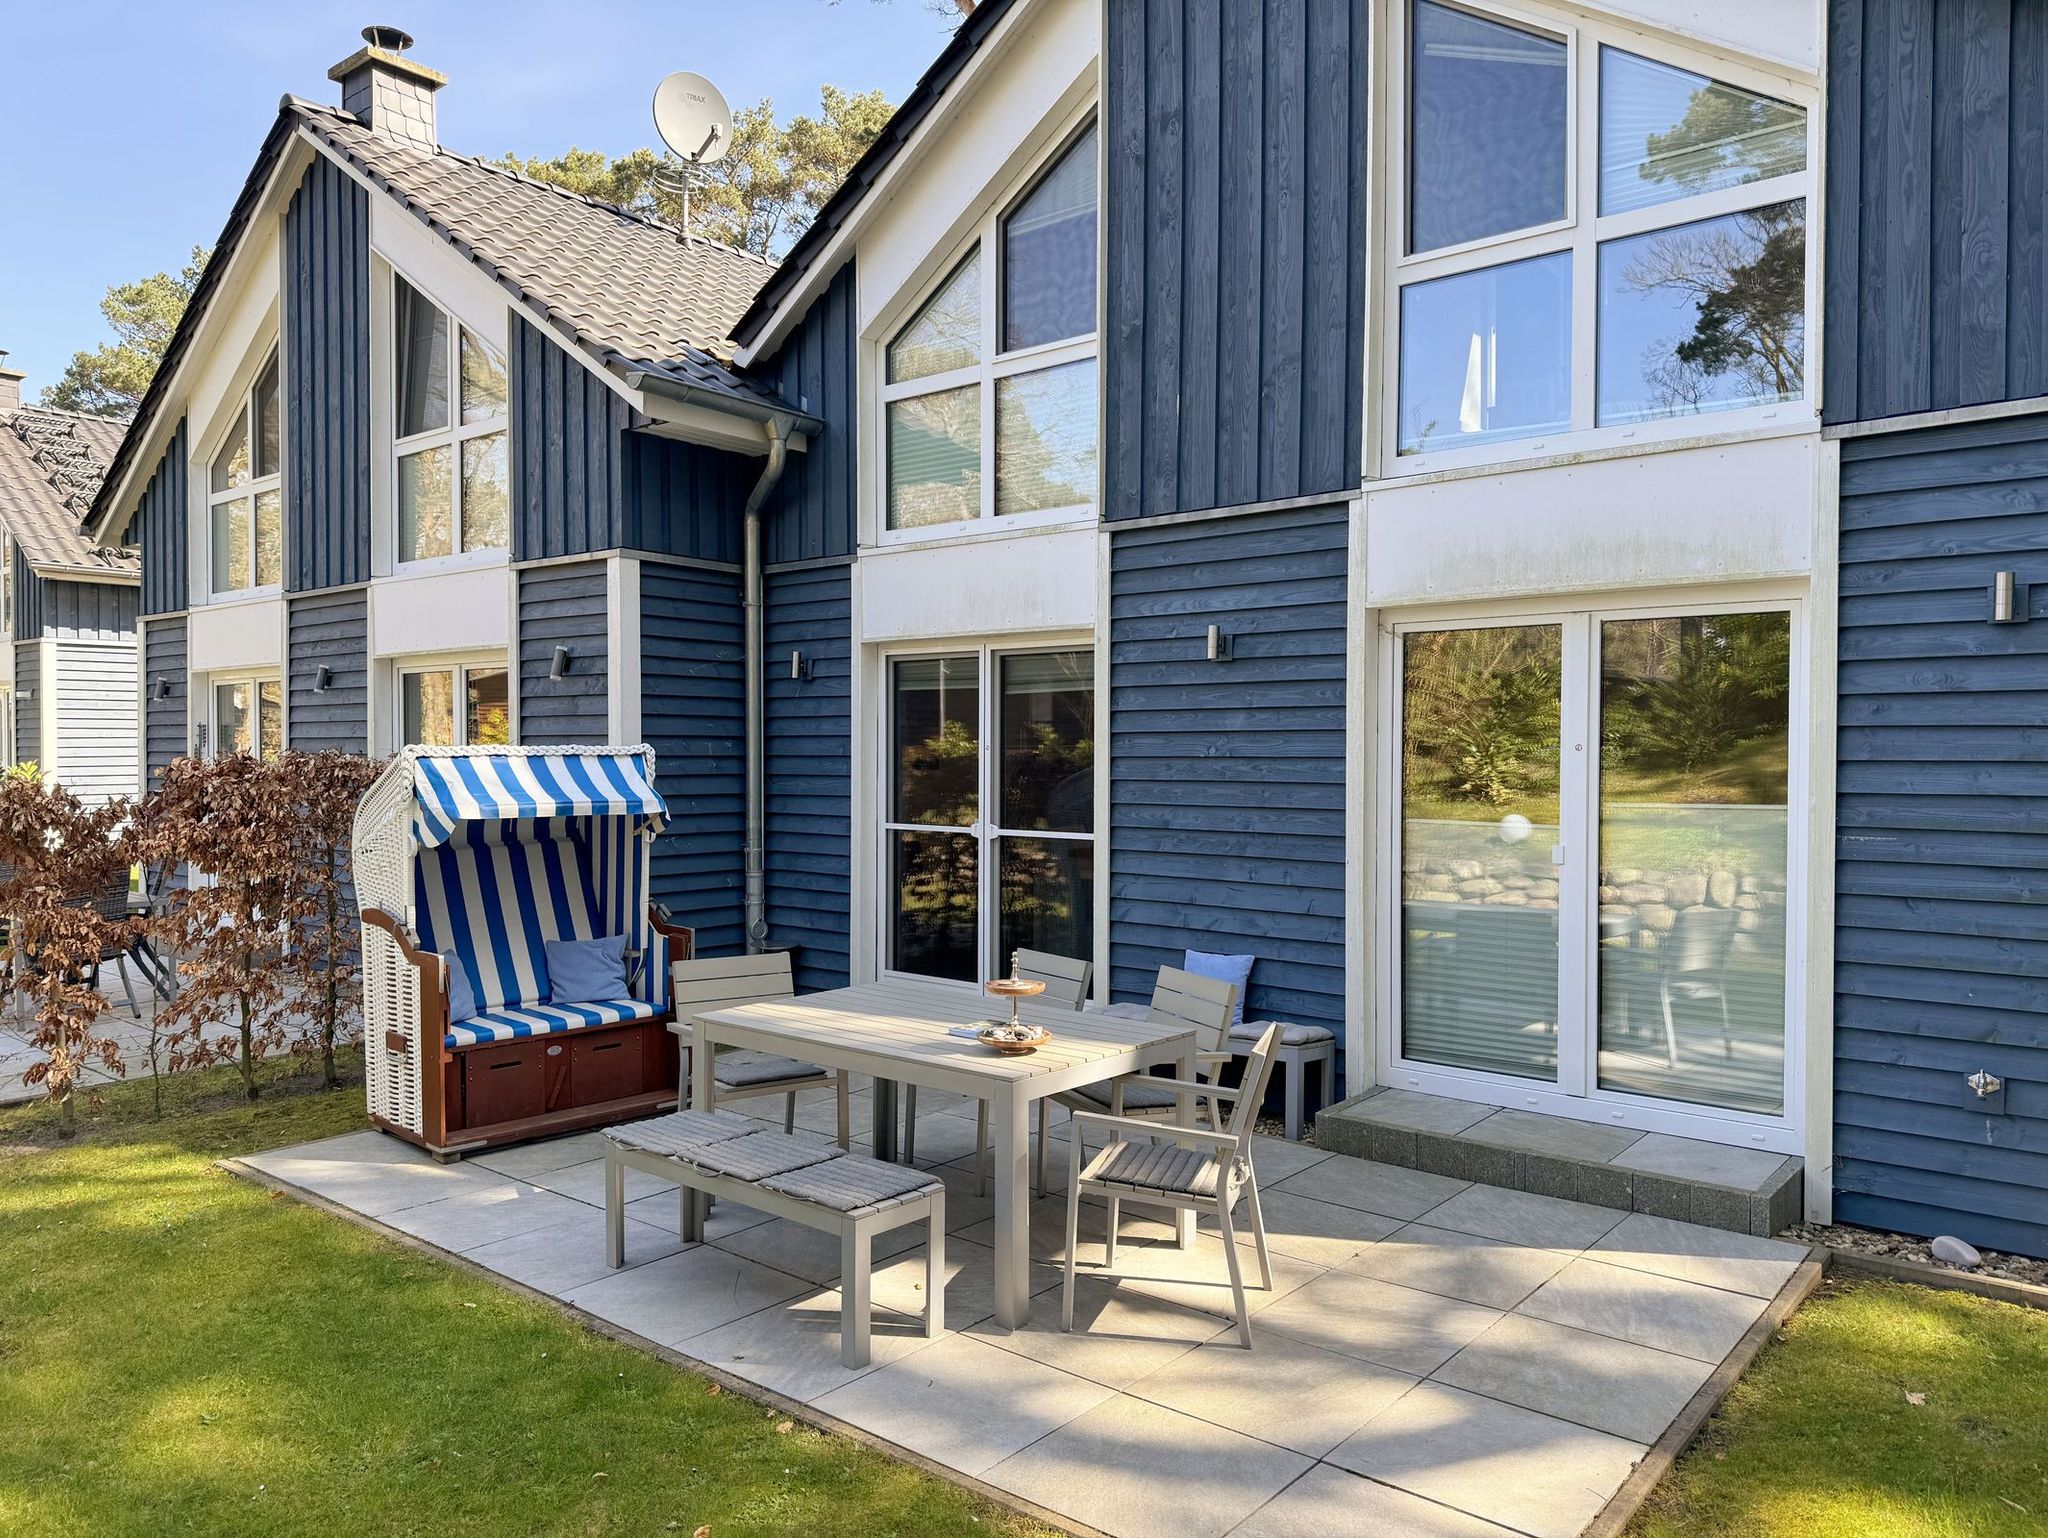 Ferienhaus Blaue Welle - Terrasse mit Strandkorb